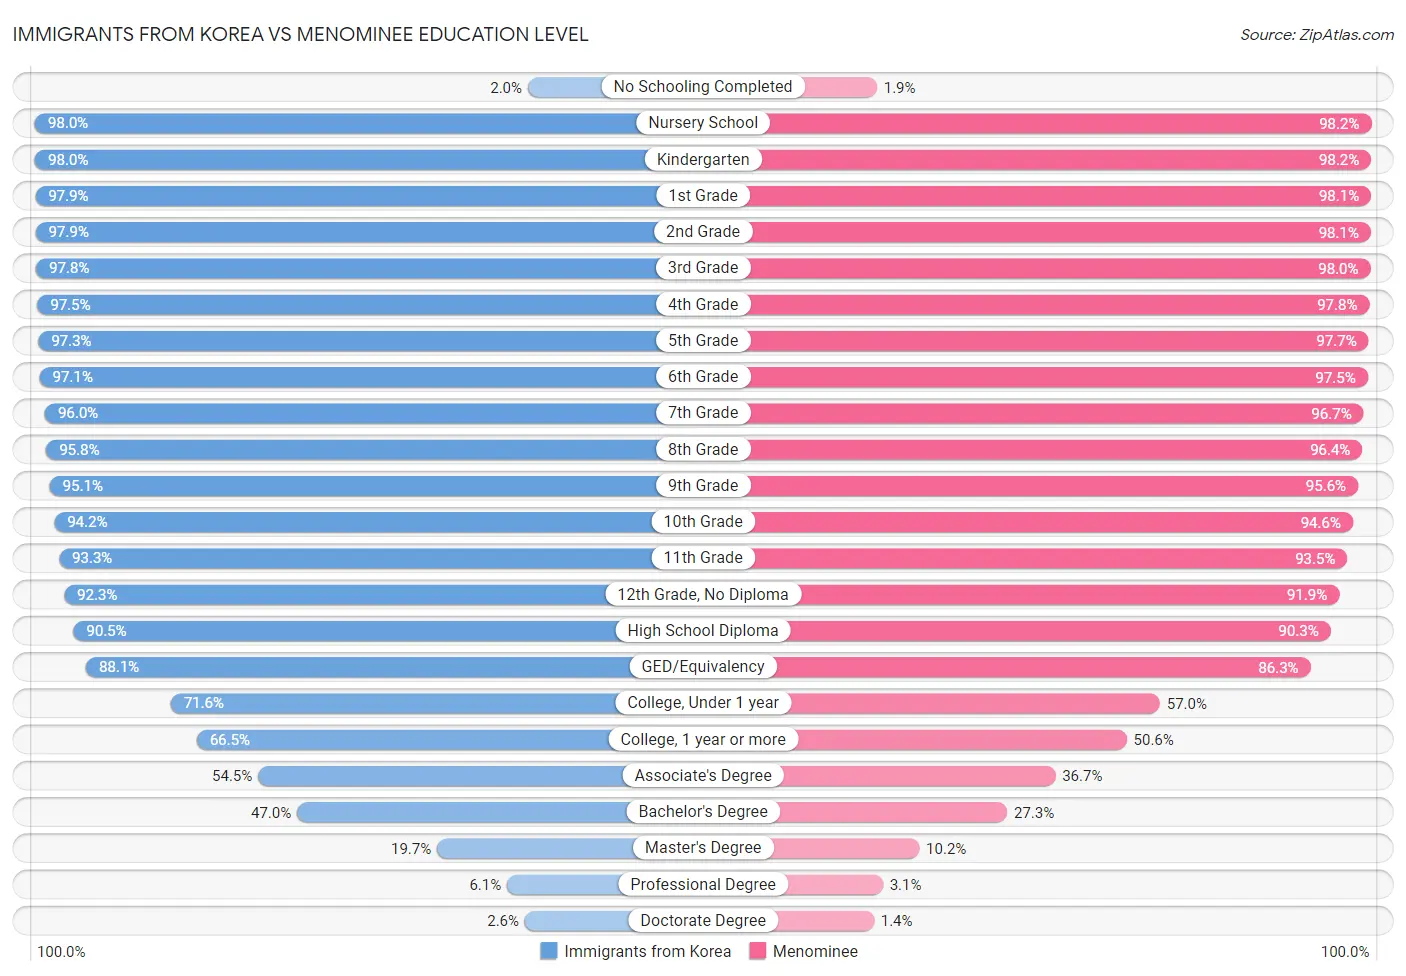 Immigrants from Korea vs Menominee Education Level